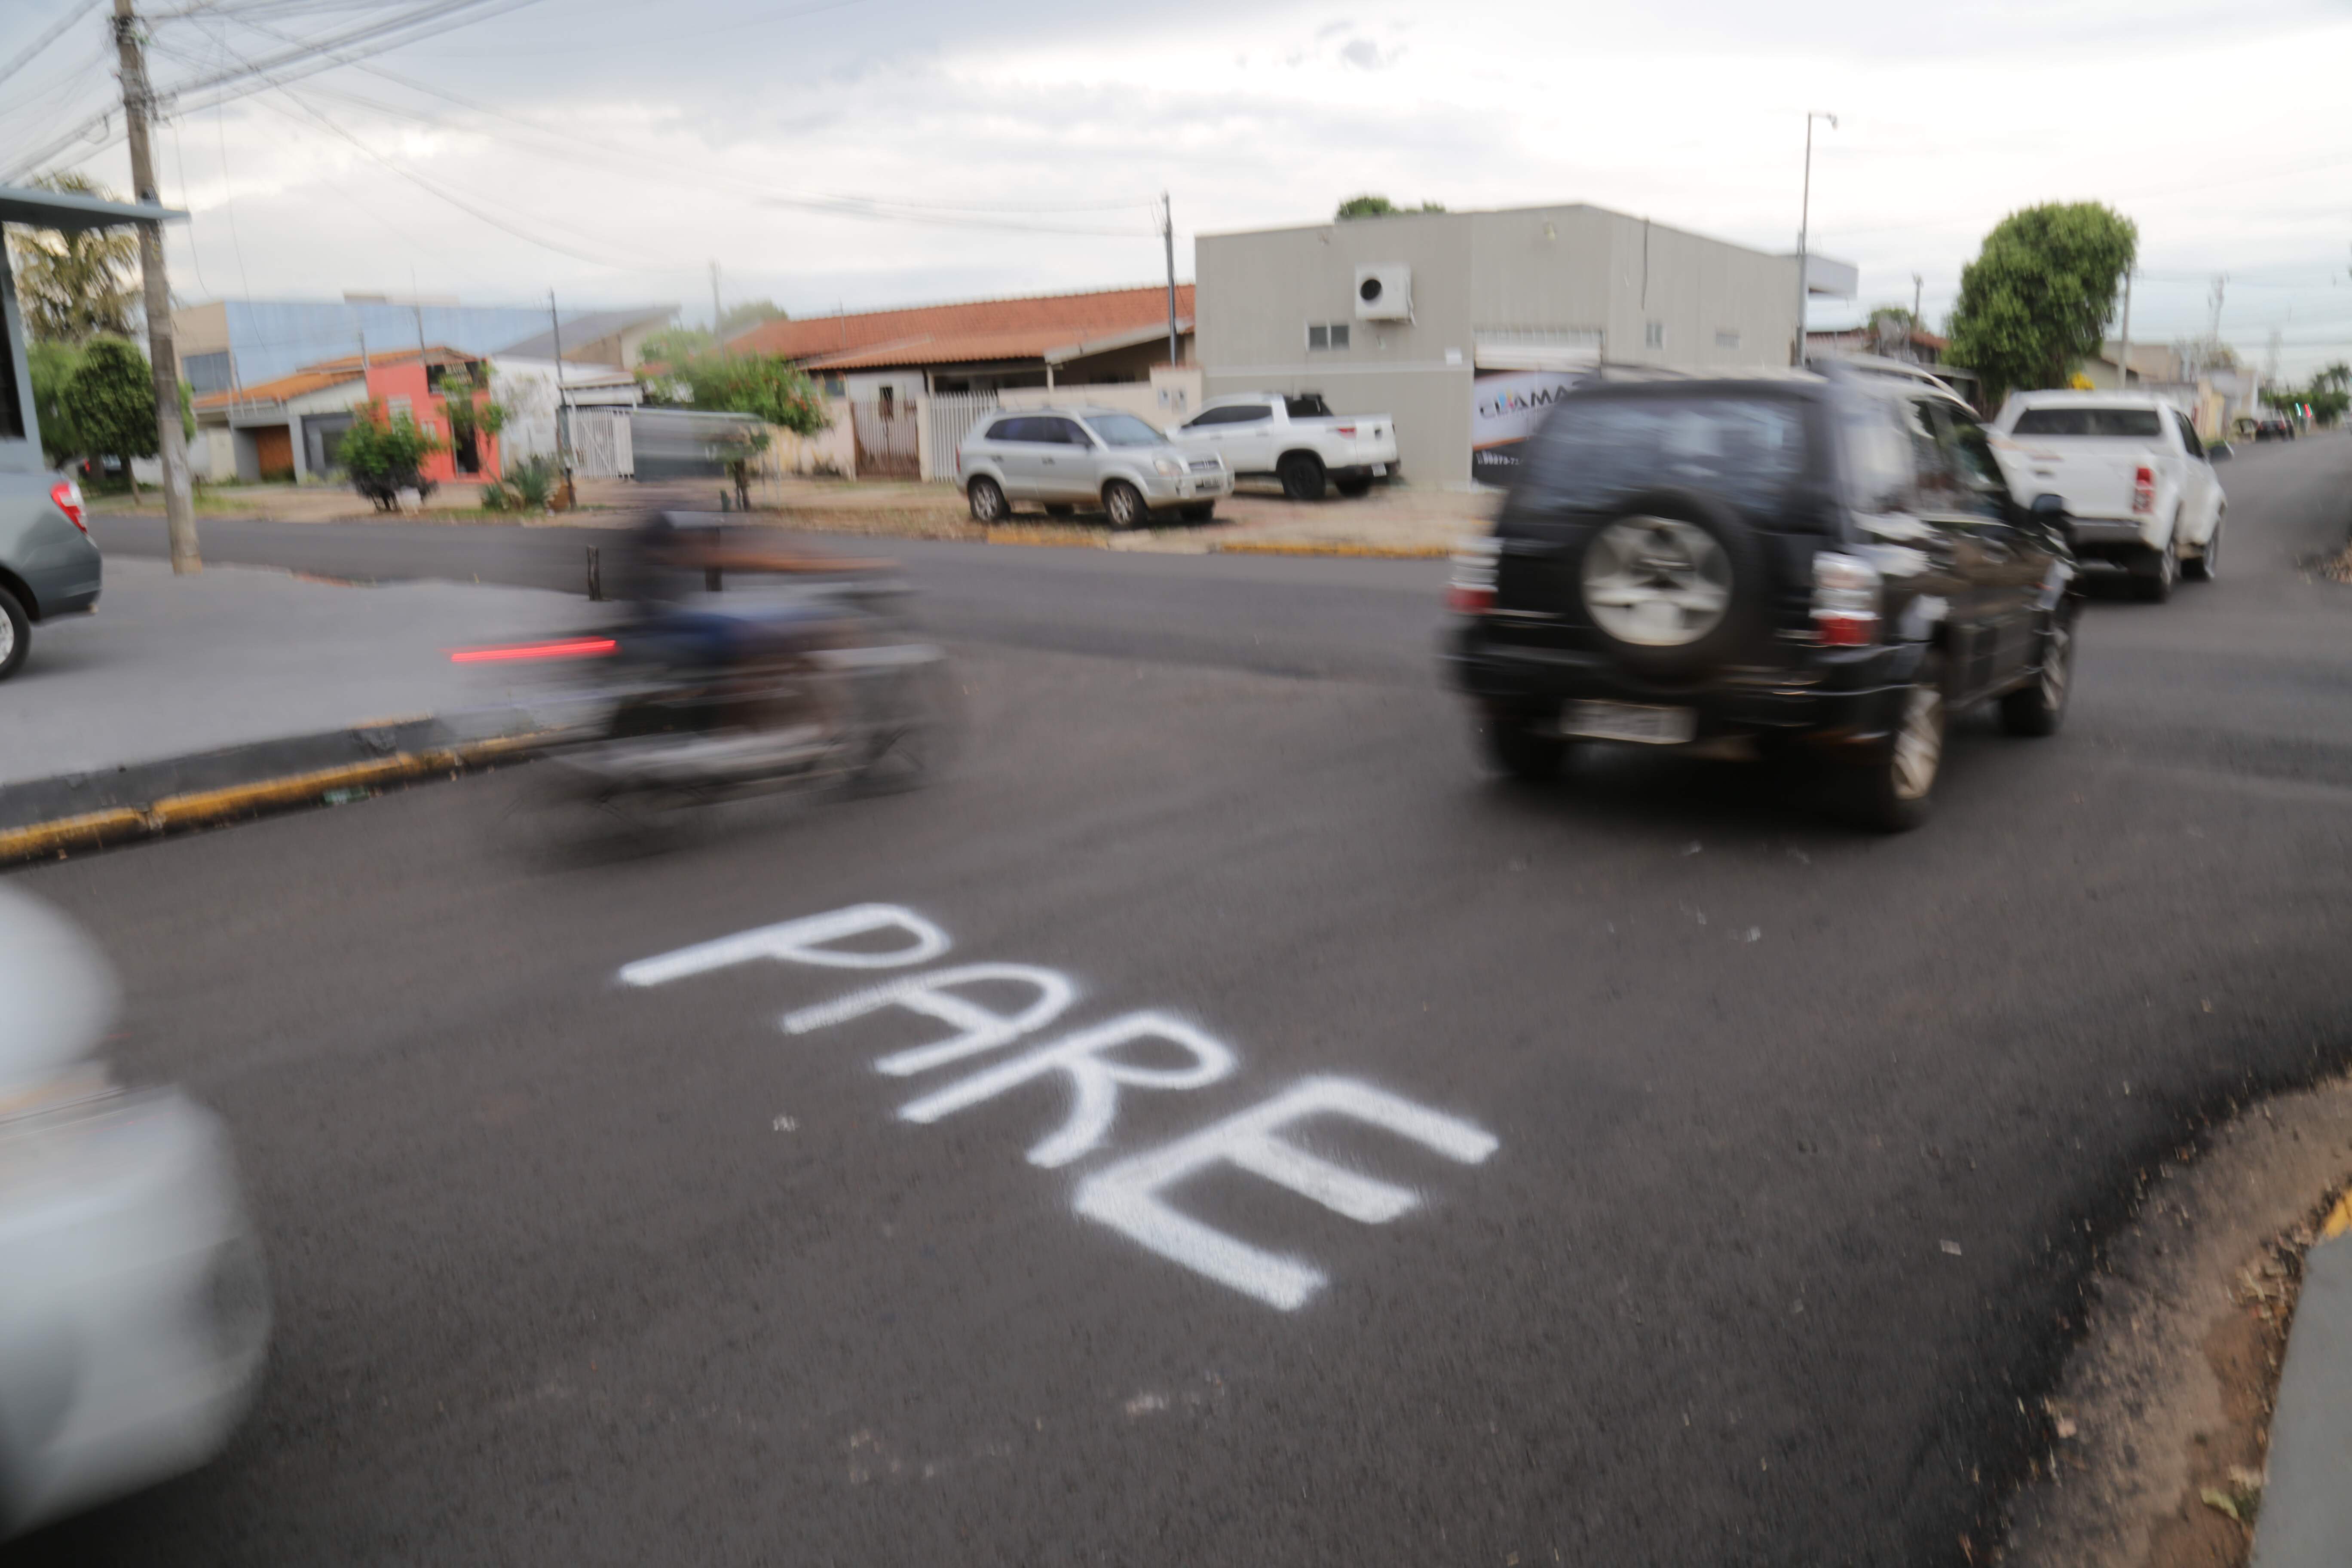 img 6389 - Com acidentes frequentes, cruzamentos perigosos exigem cuidado redobrado em Campo Grande